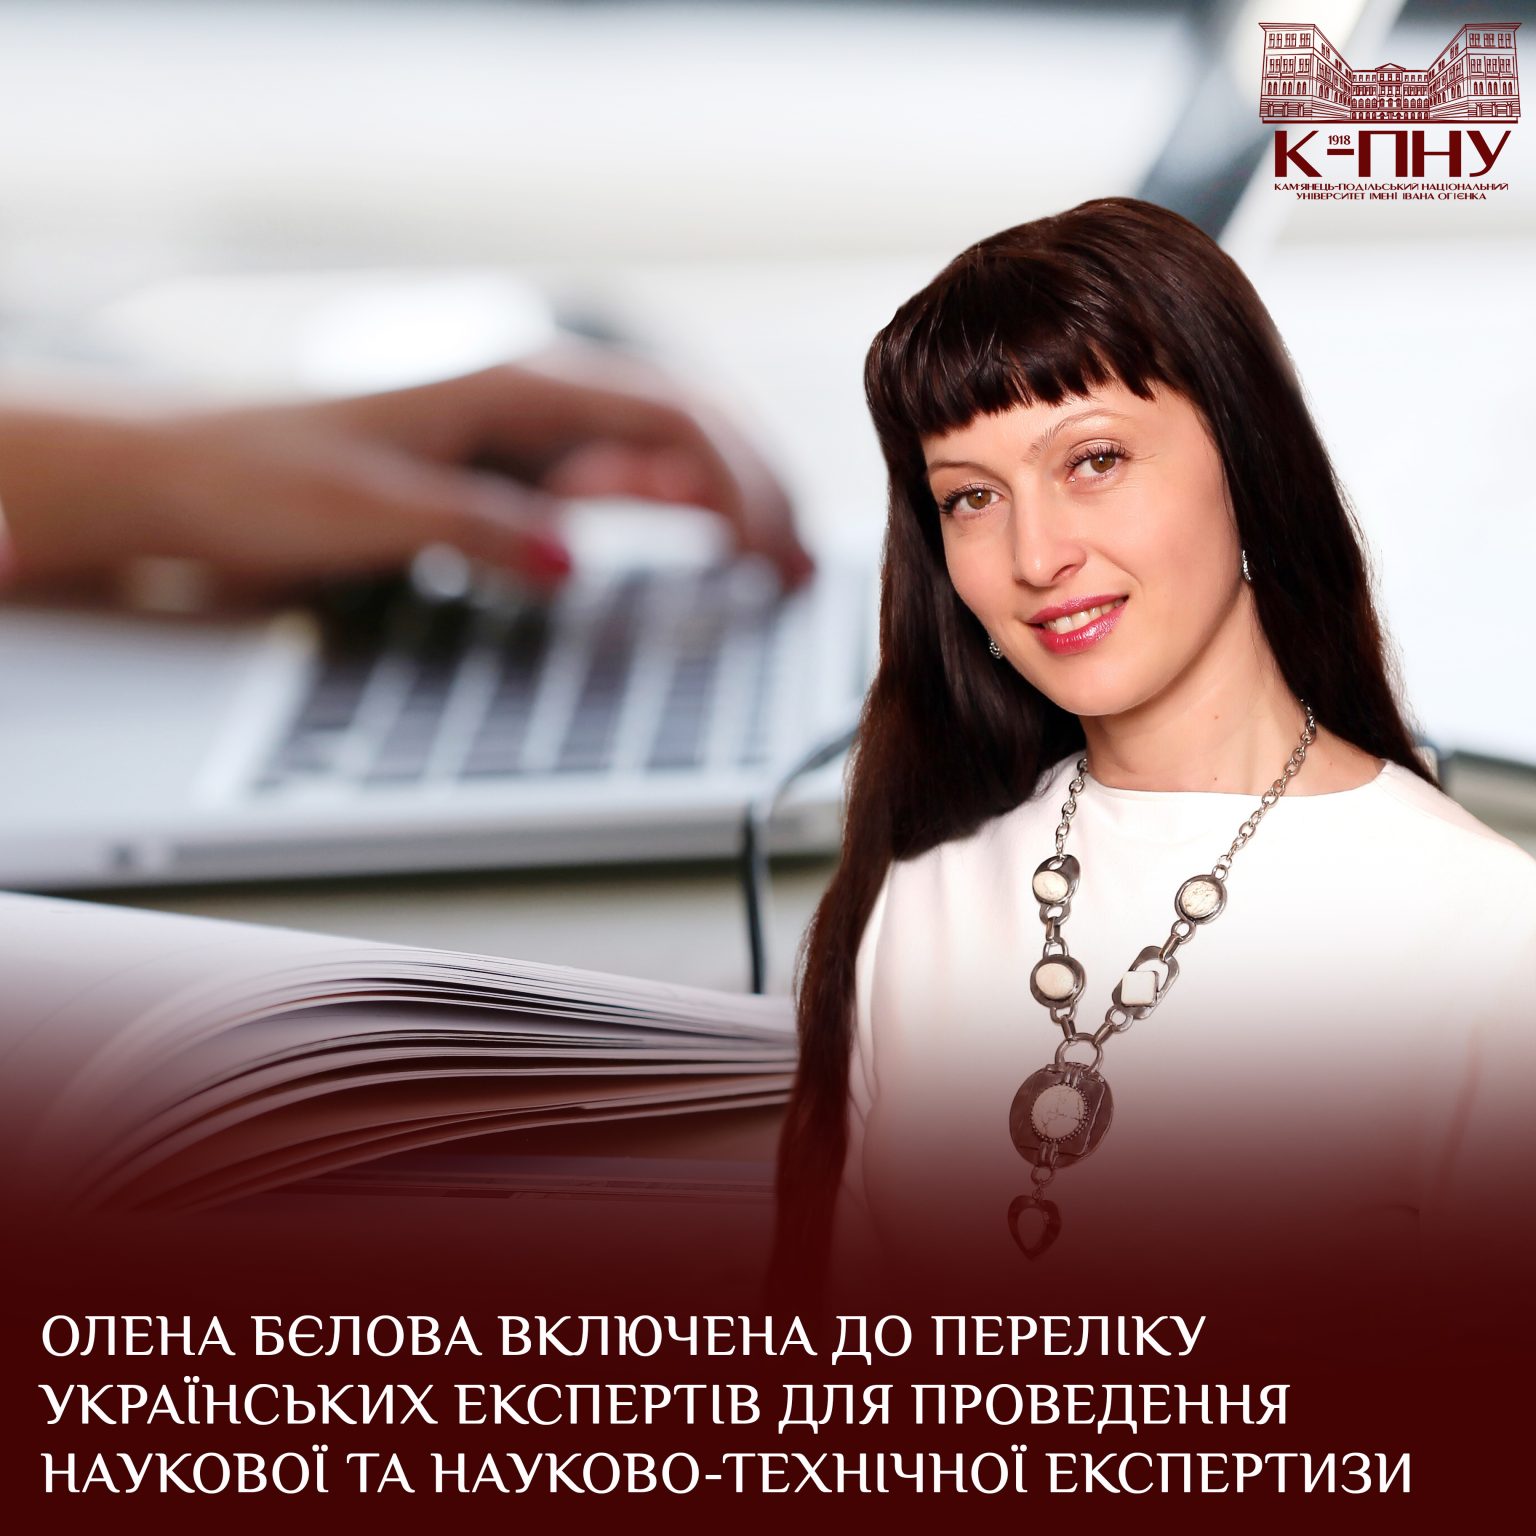 Олена Бєлова включена до переліку українських експертів для проведення наукової та науково-технічної експертизи